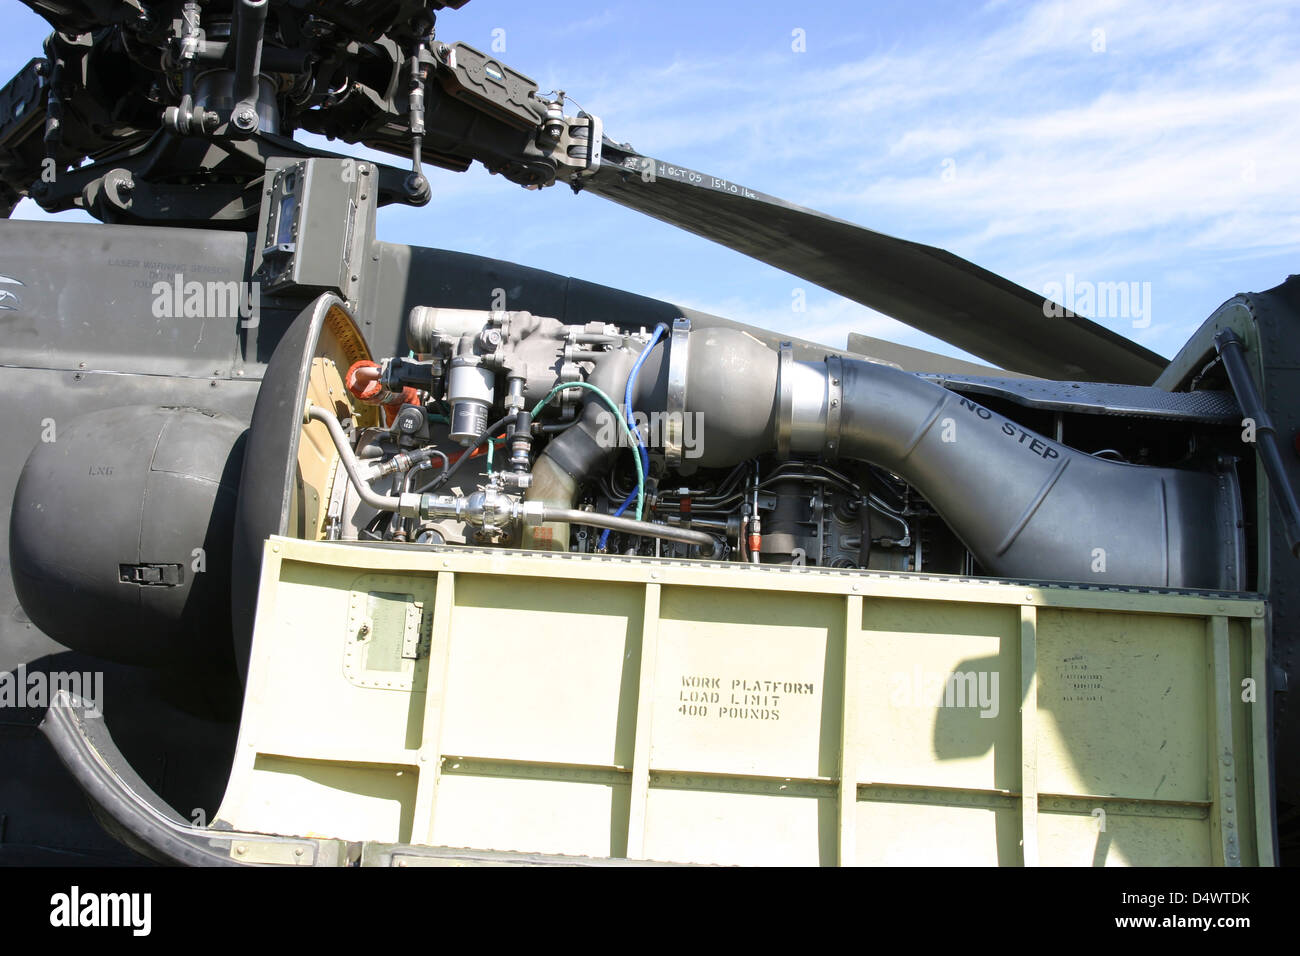 El AH-64D Apache es alimentado por dos General Electric T700 los motores de turbina de gas. Cada uno de ellos ofrecen eje 1890 caballos de potencia. Foto de stock